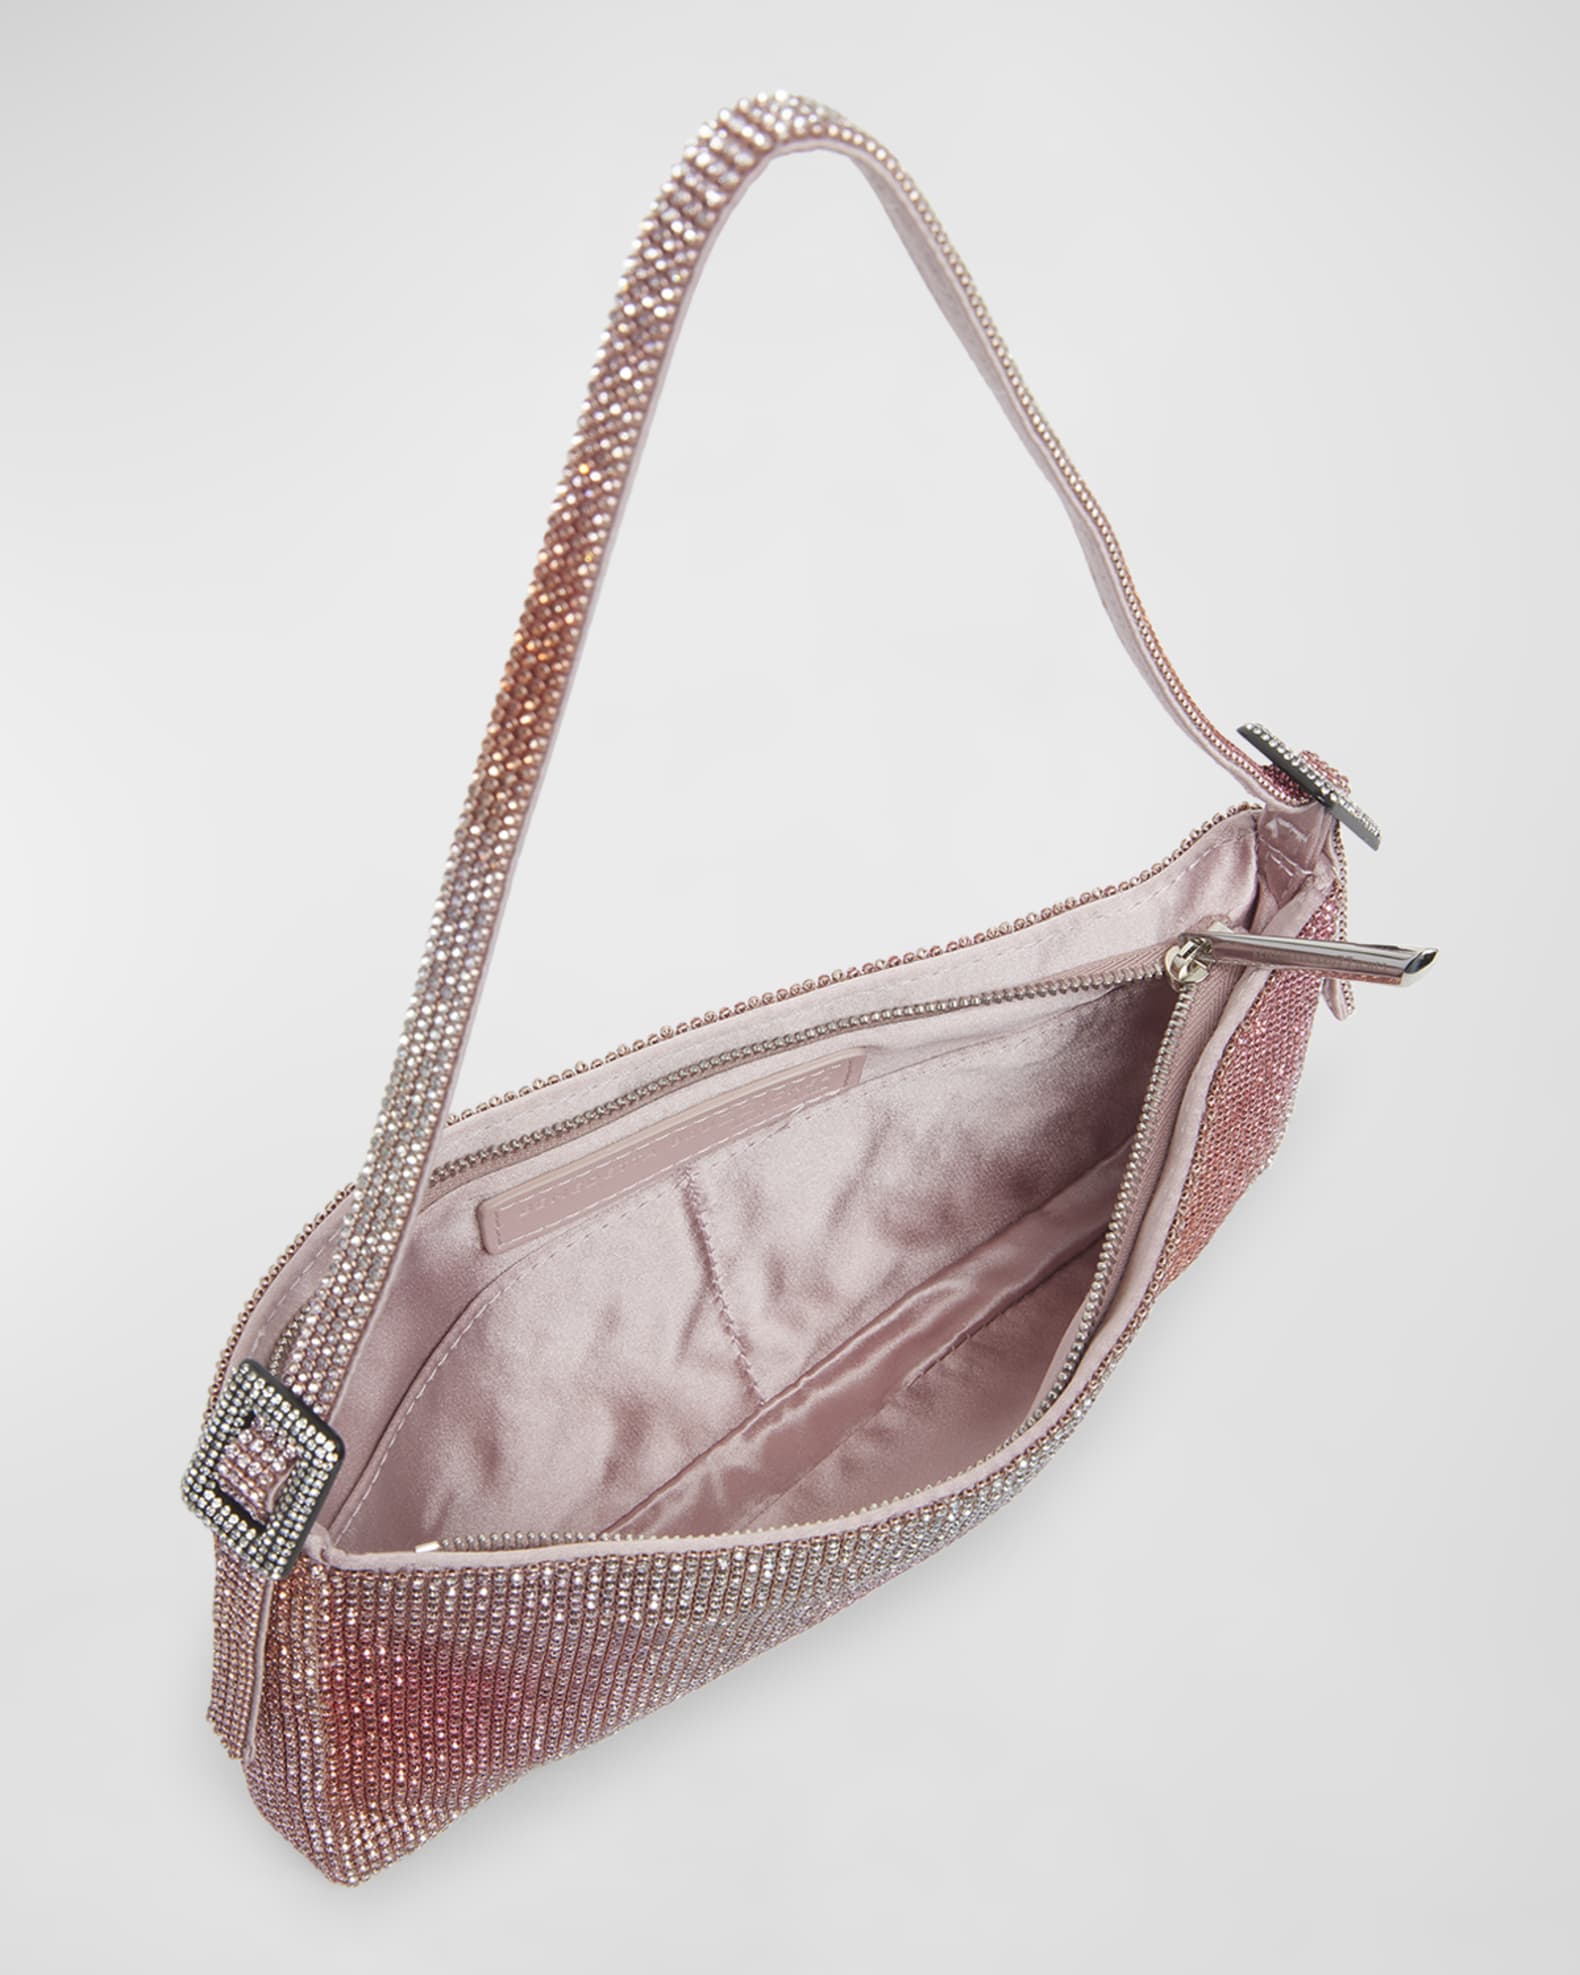 Your best friend la grande crystal-embellished handbag by